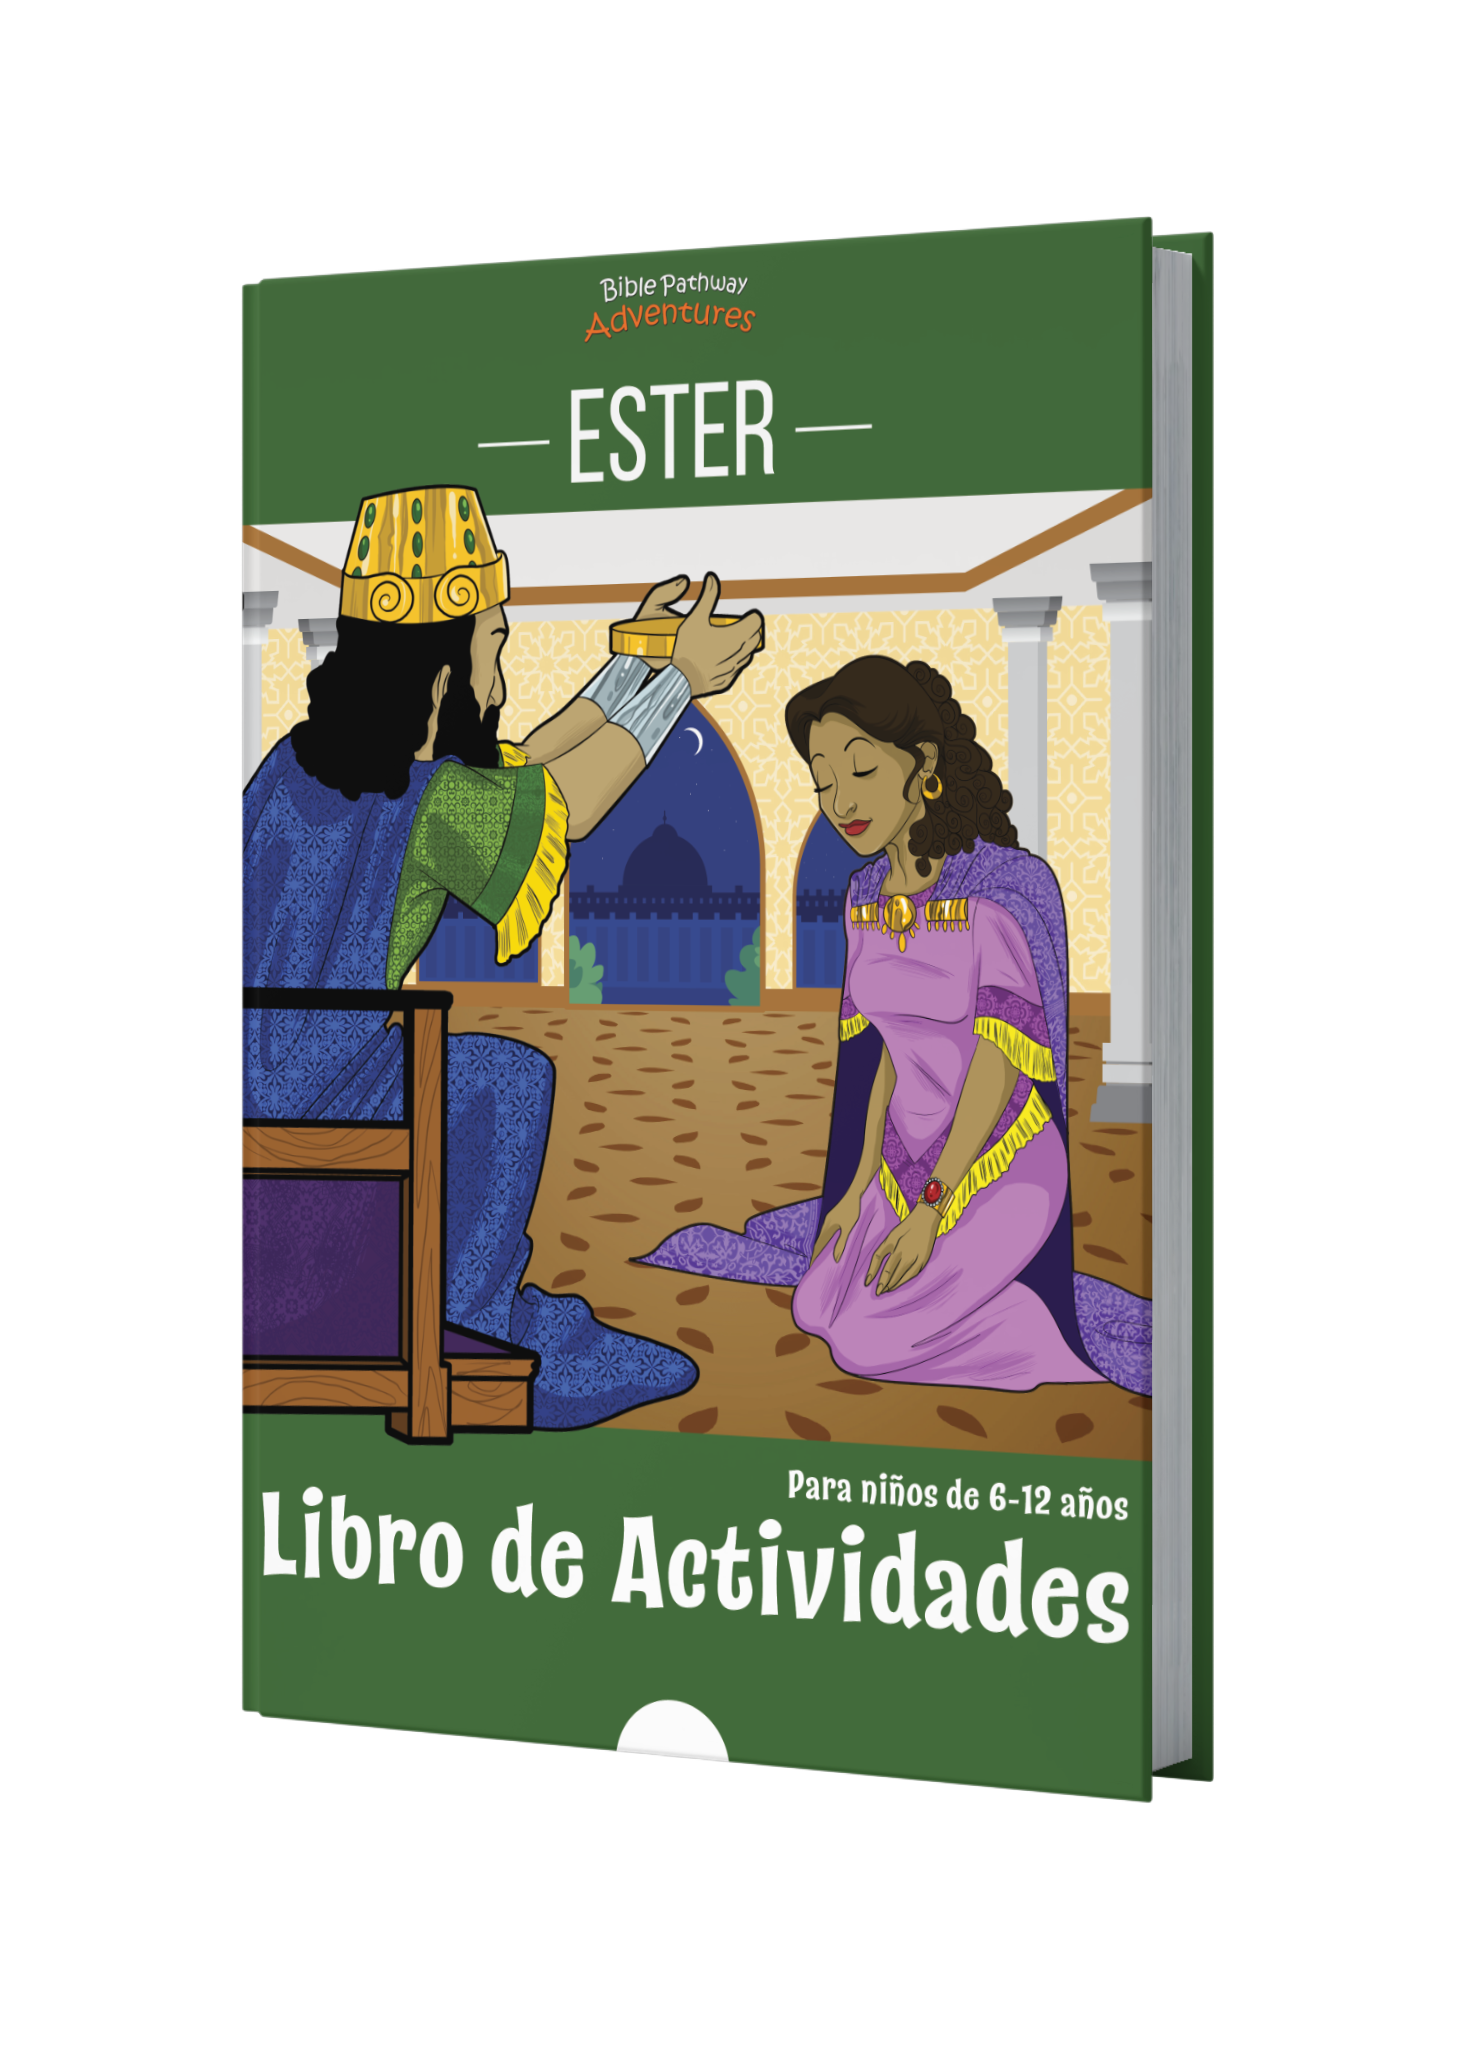 Ester: Libro de actividades book cover